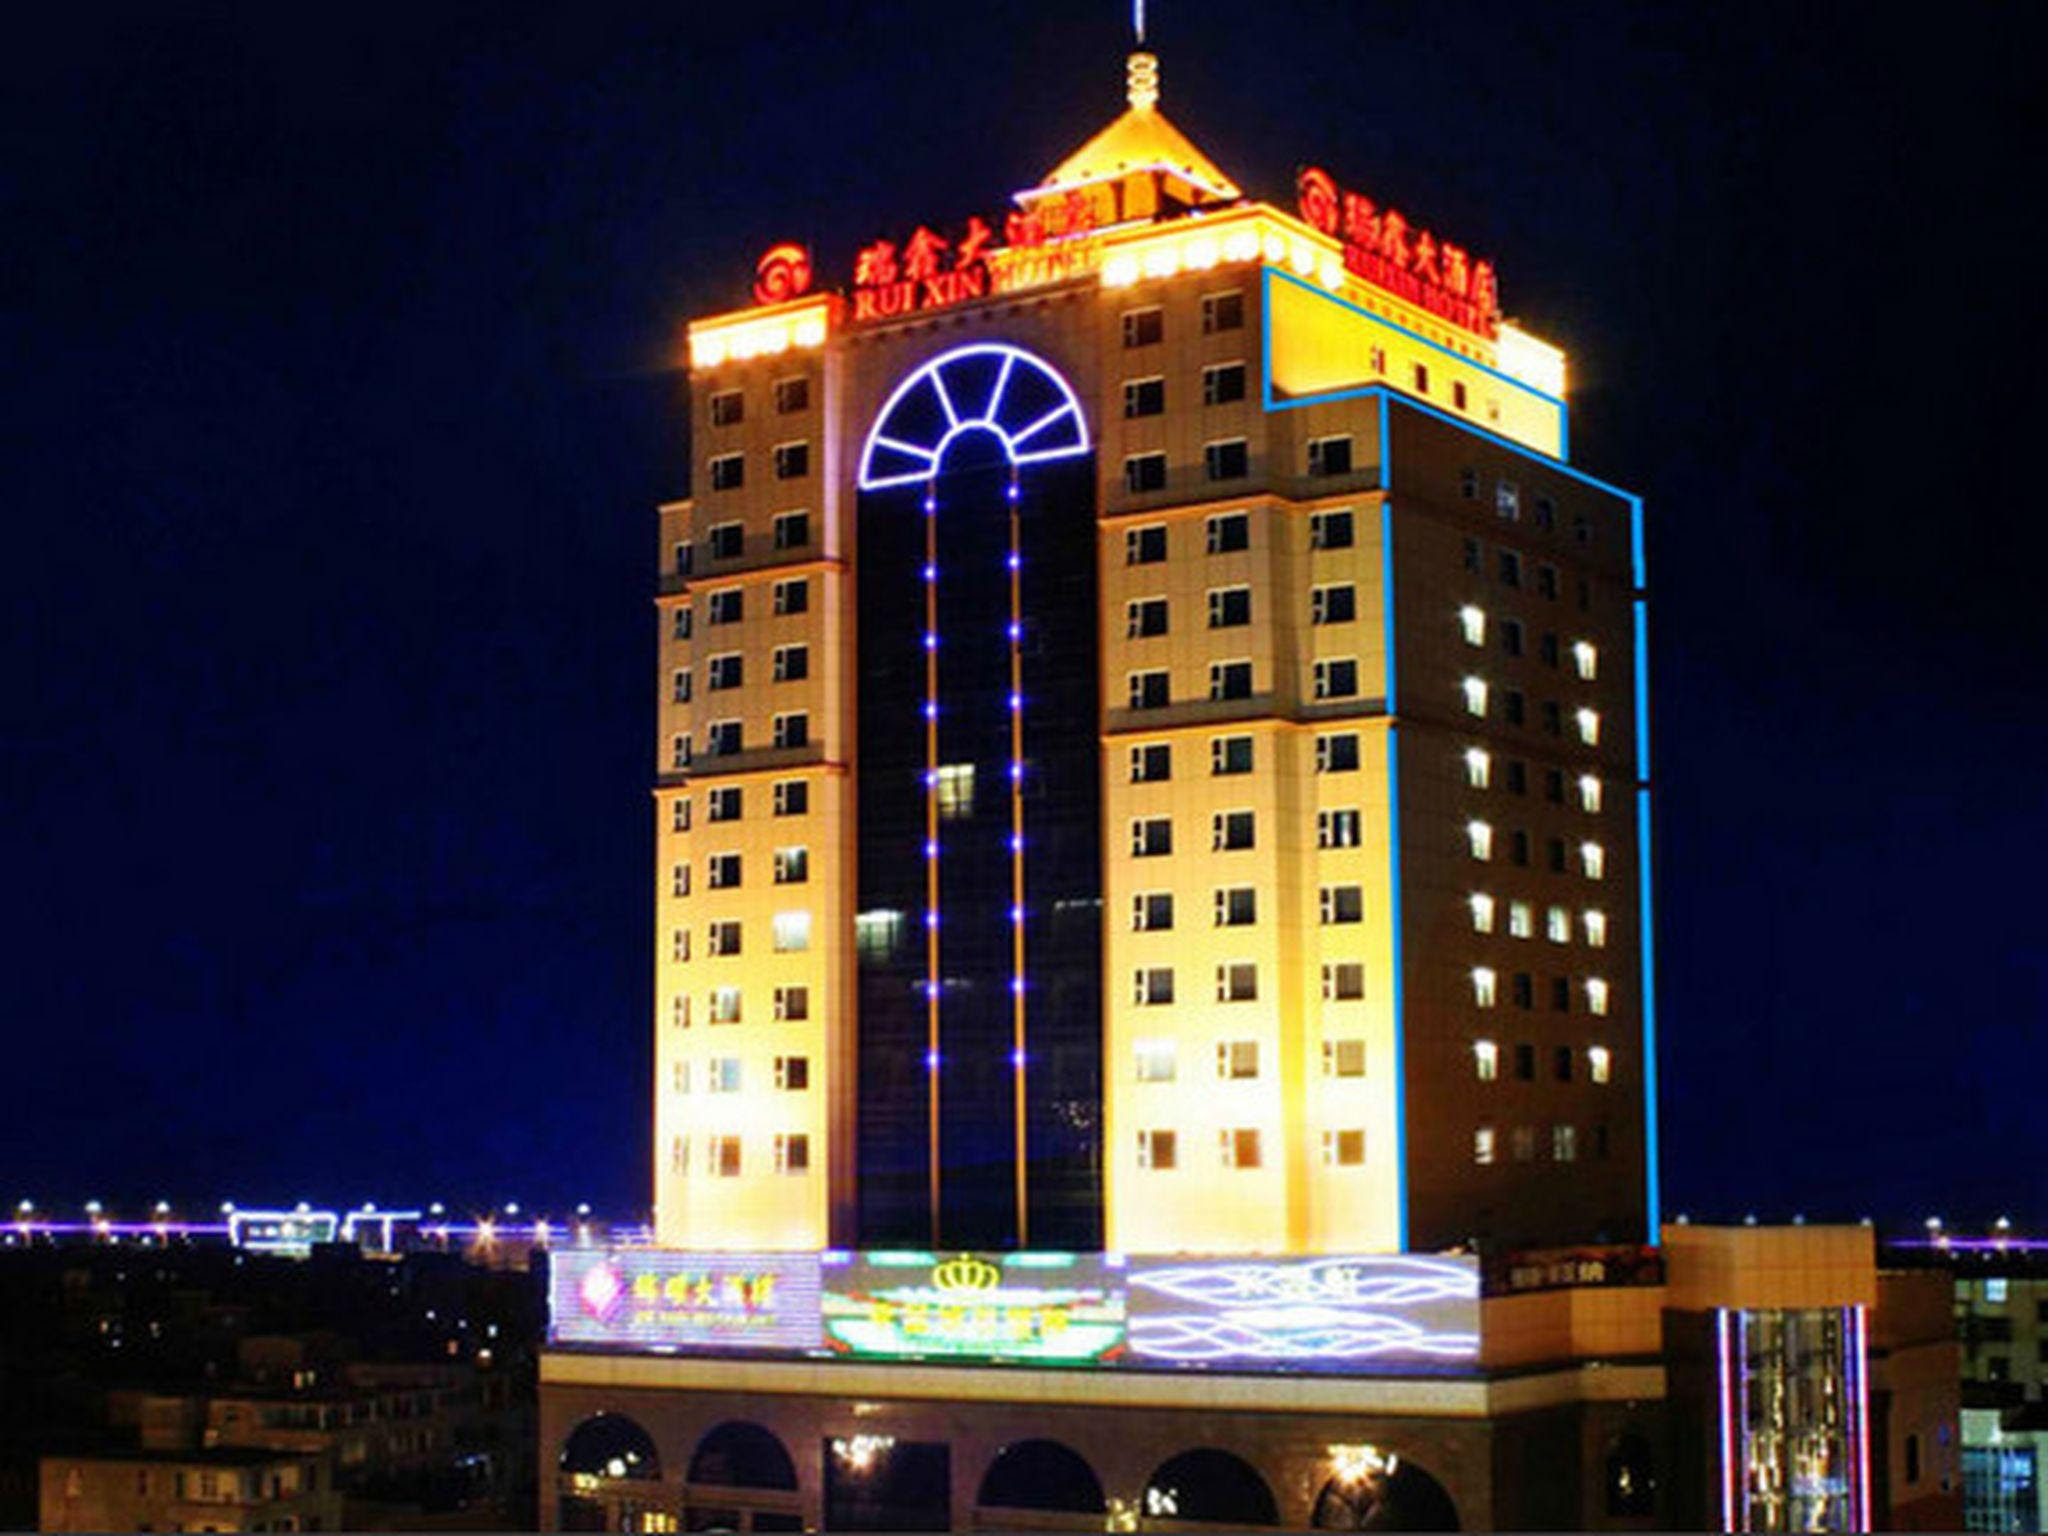 Fuzhou Fuqing Ruixin Hotel Reviews